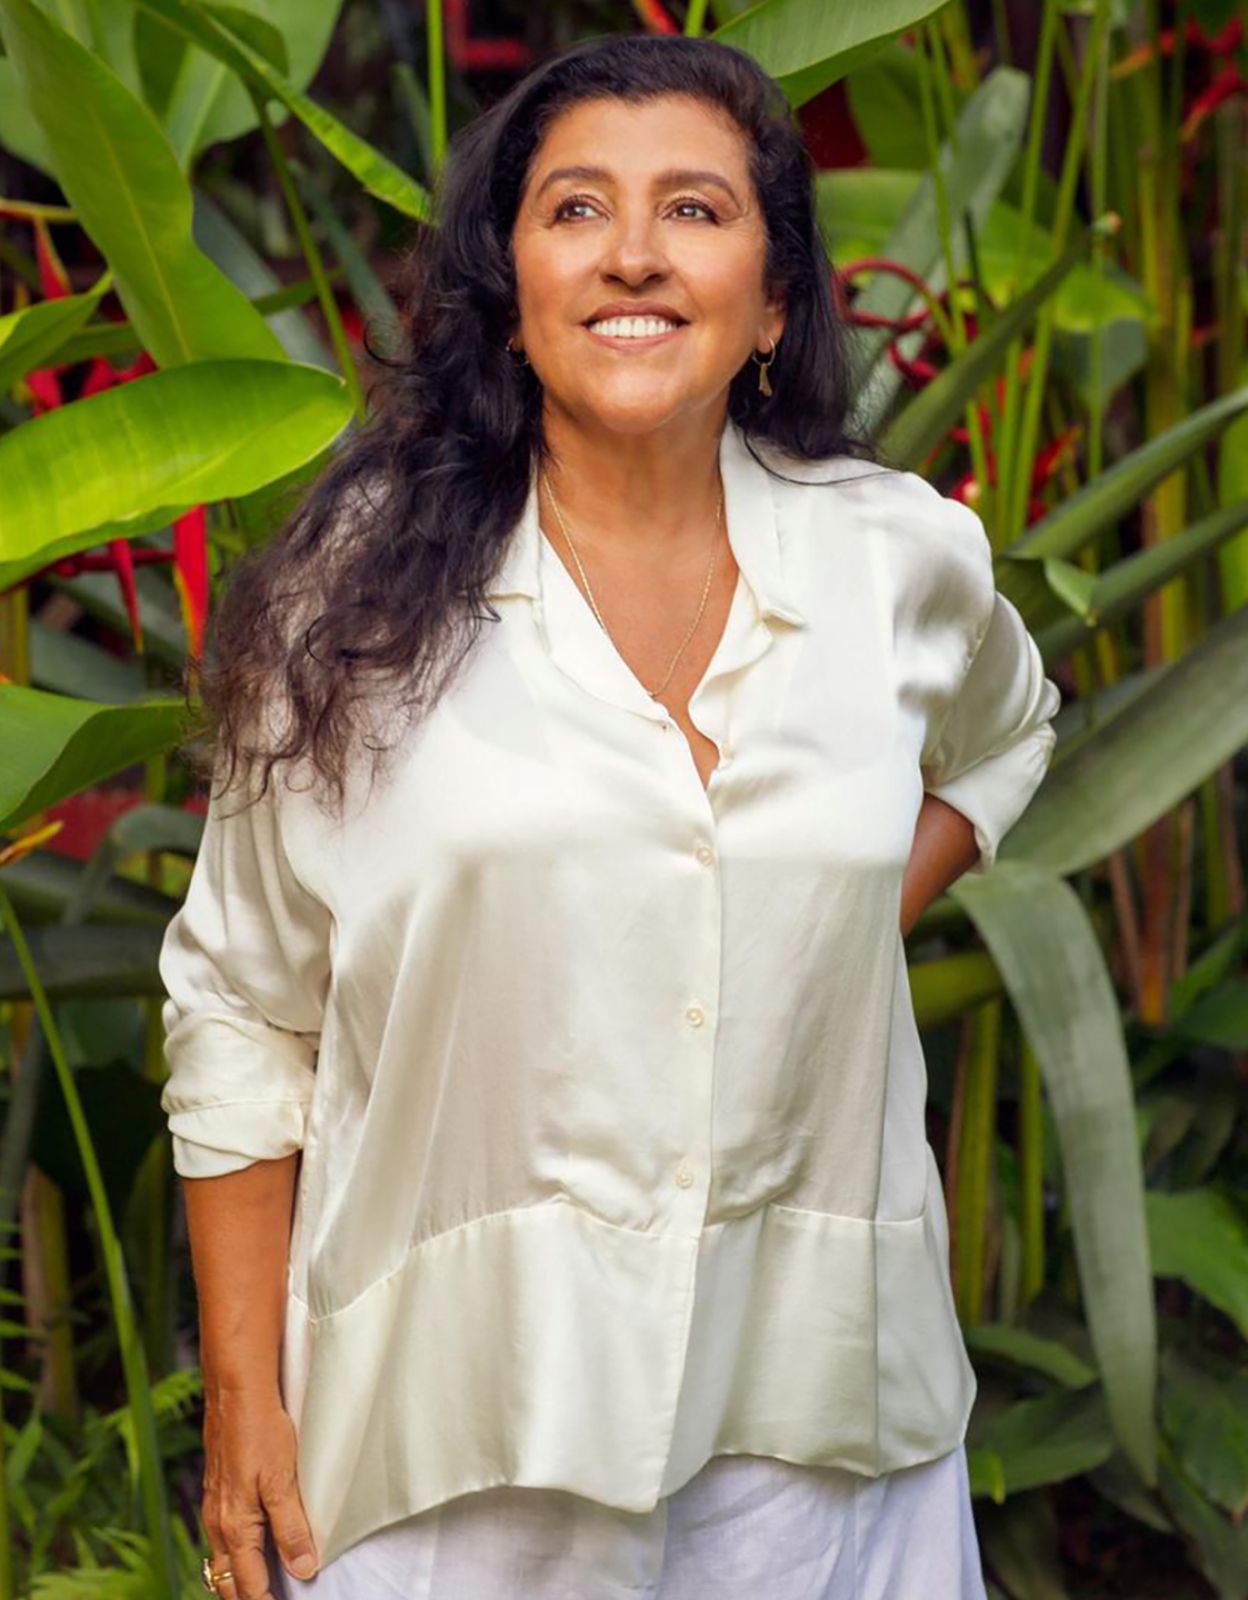 Regina Casé falará sobre diversidade em evento em Salvador: “Diversidade é igual riqueza”  